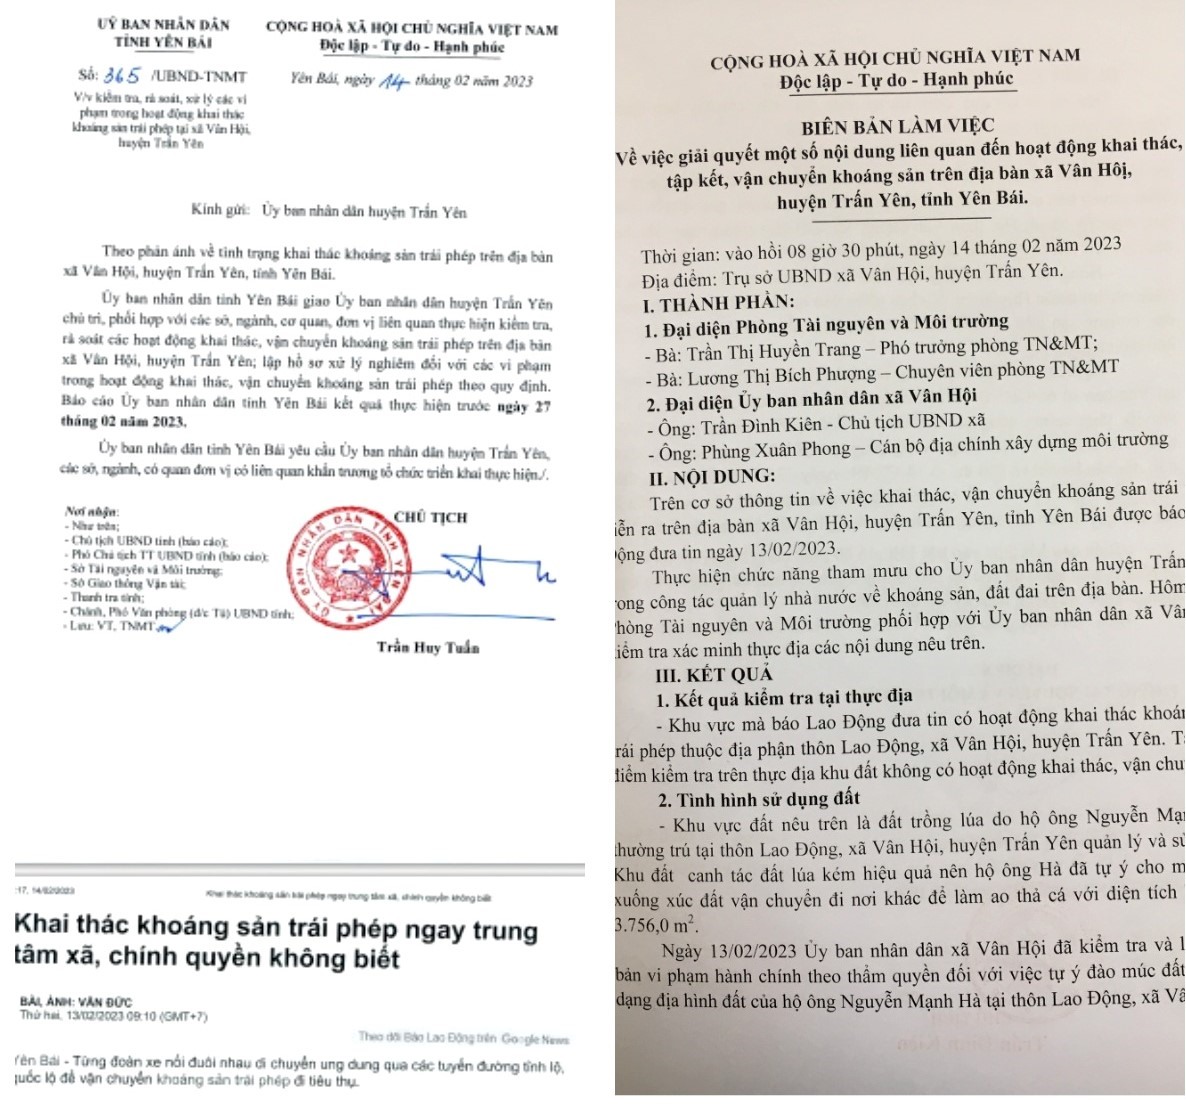 UBND tỉnh Yên Bái yêu cầu các cơ quan chức năng khẩn trương vào cuộc, xử lý nghiêm vi phạm trong khai thác, vận chuyển khoáng sản trái phép tại xã Vân Hội, huyện Trấn Yên.